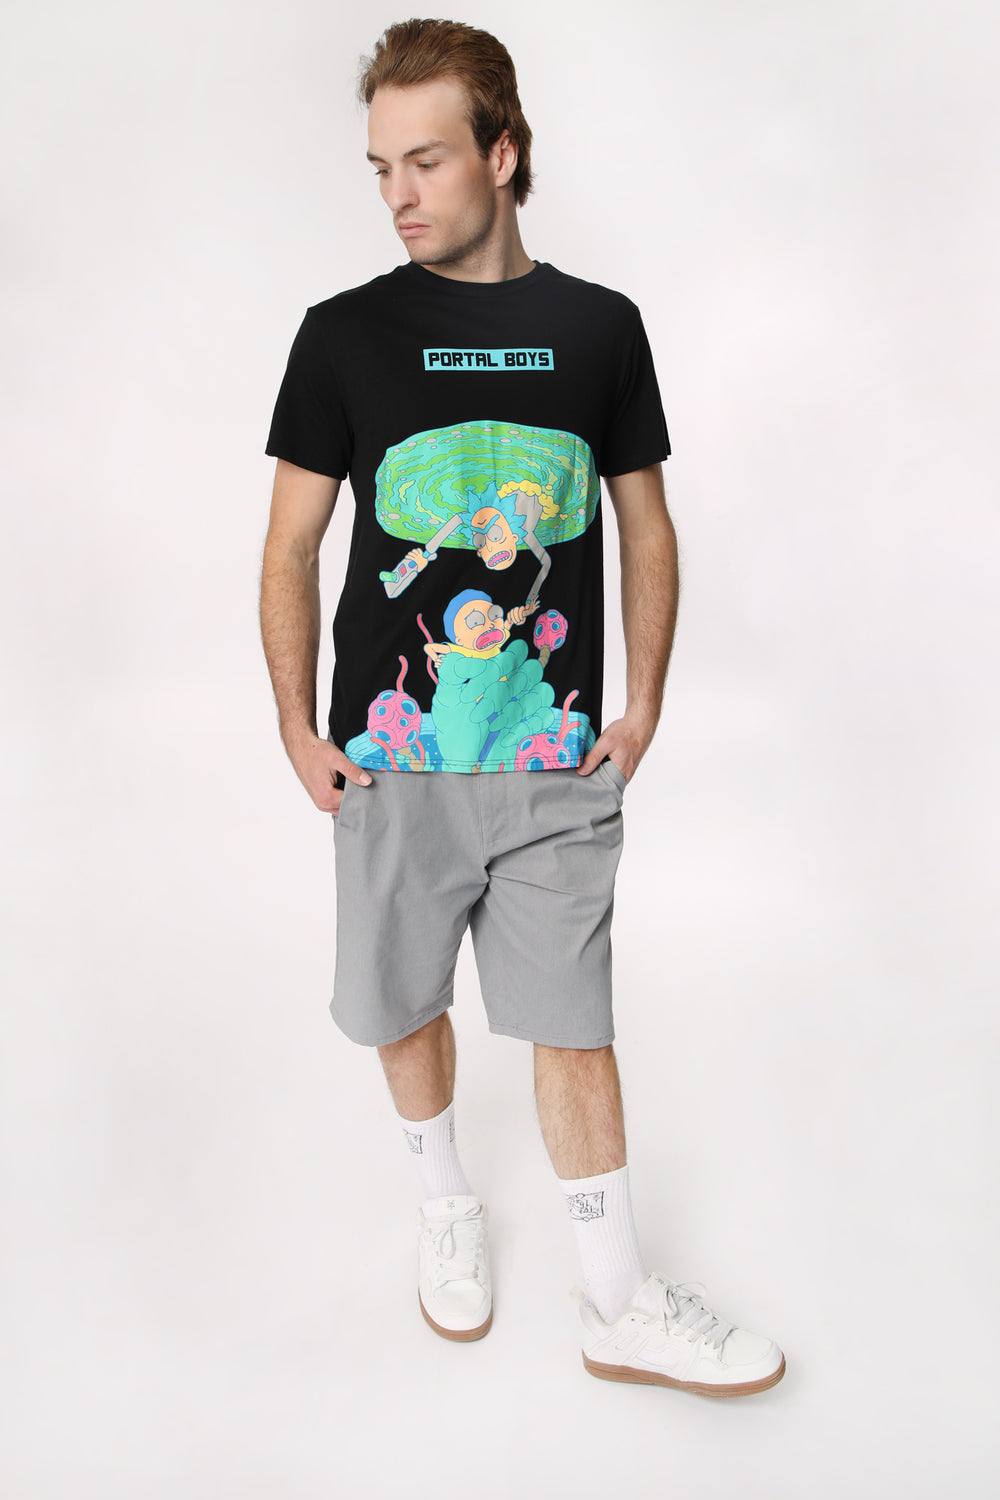 T-Shirt Imprimé Portal Boys Rick et Morty Homme T-Shirt Imprimé Portal Boys Rick et Morty Homme